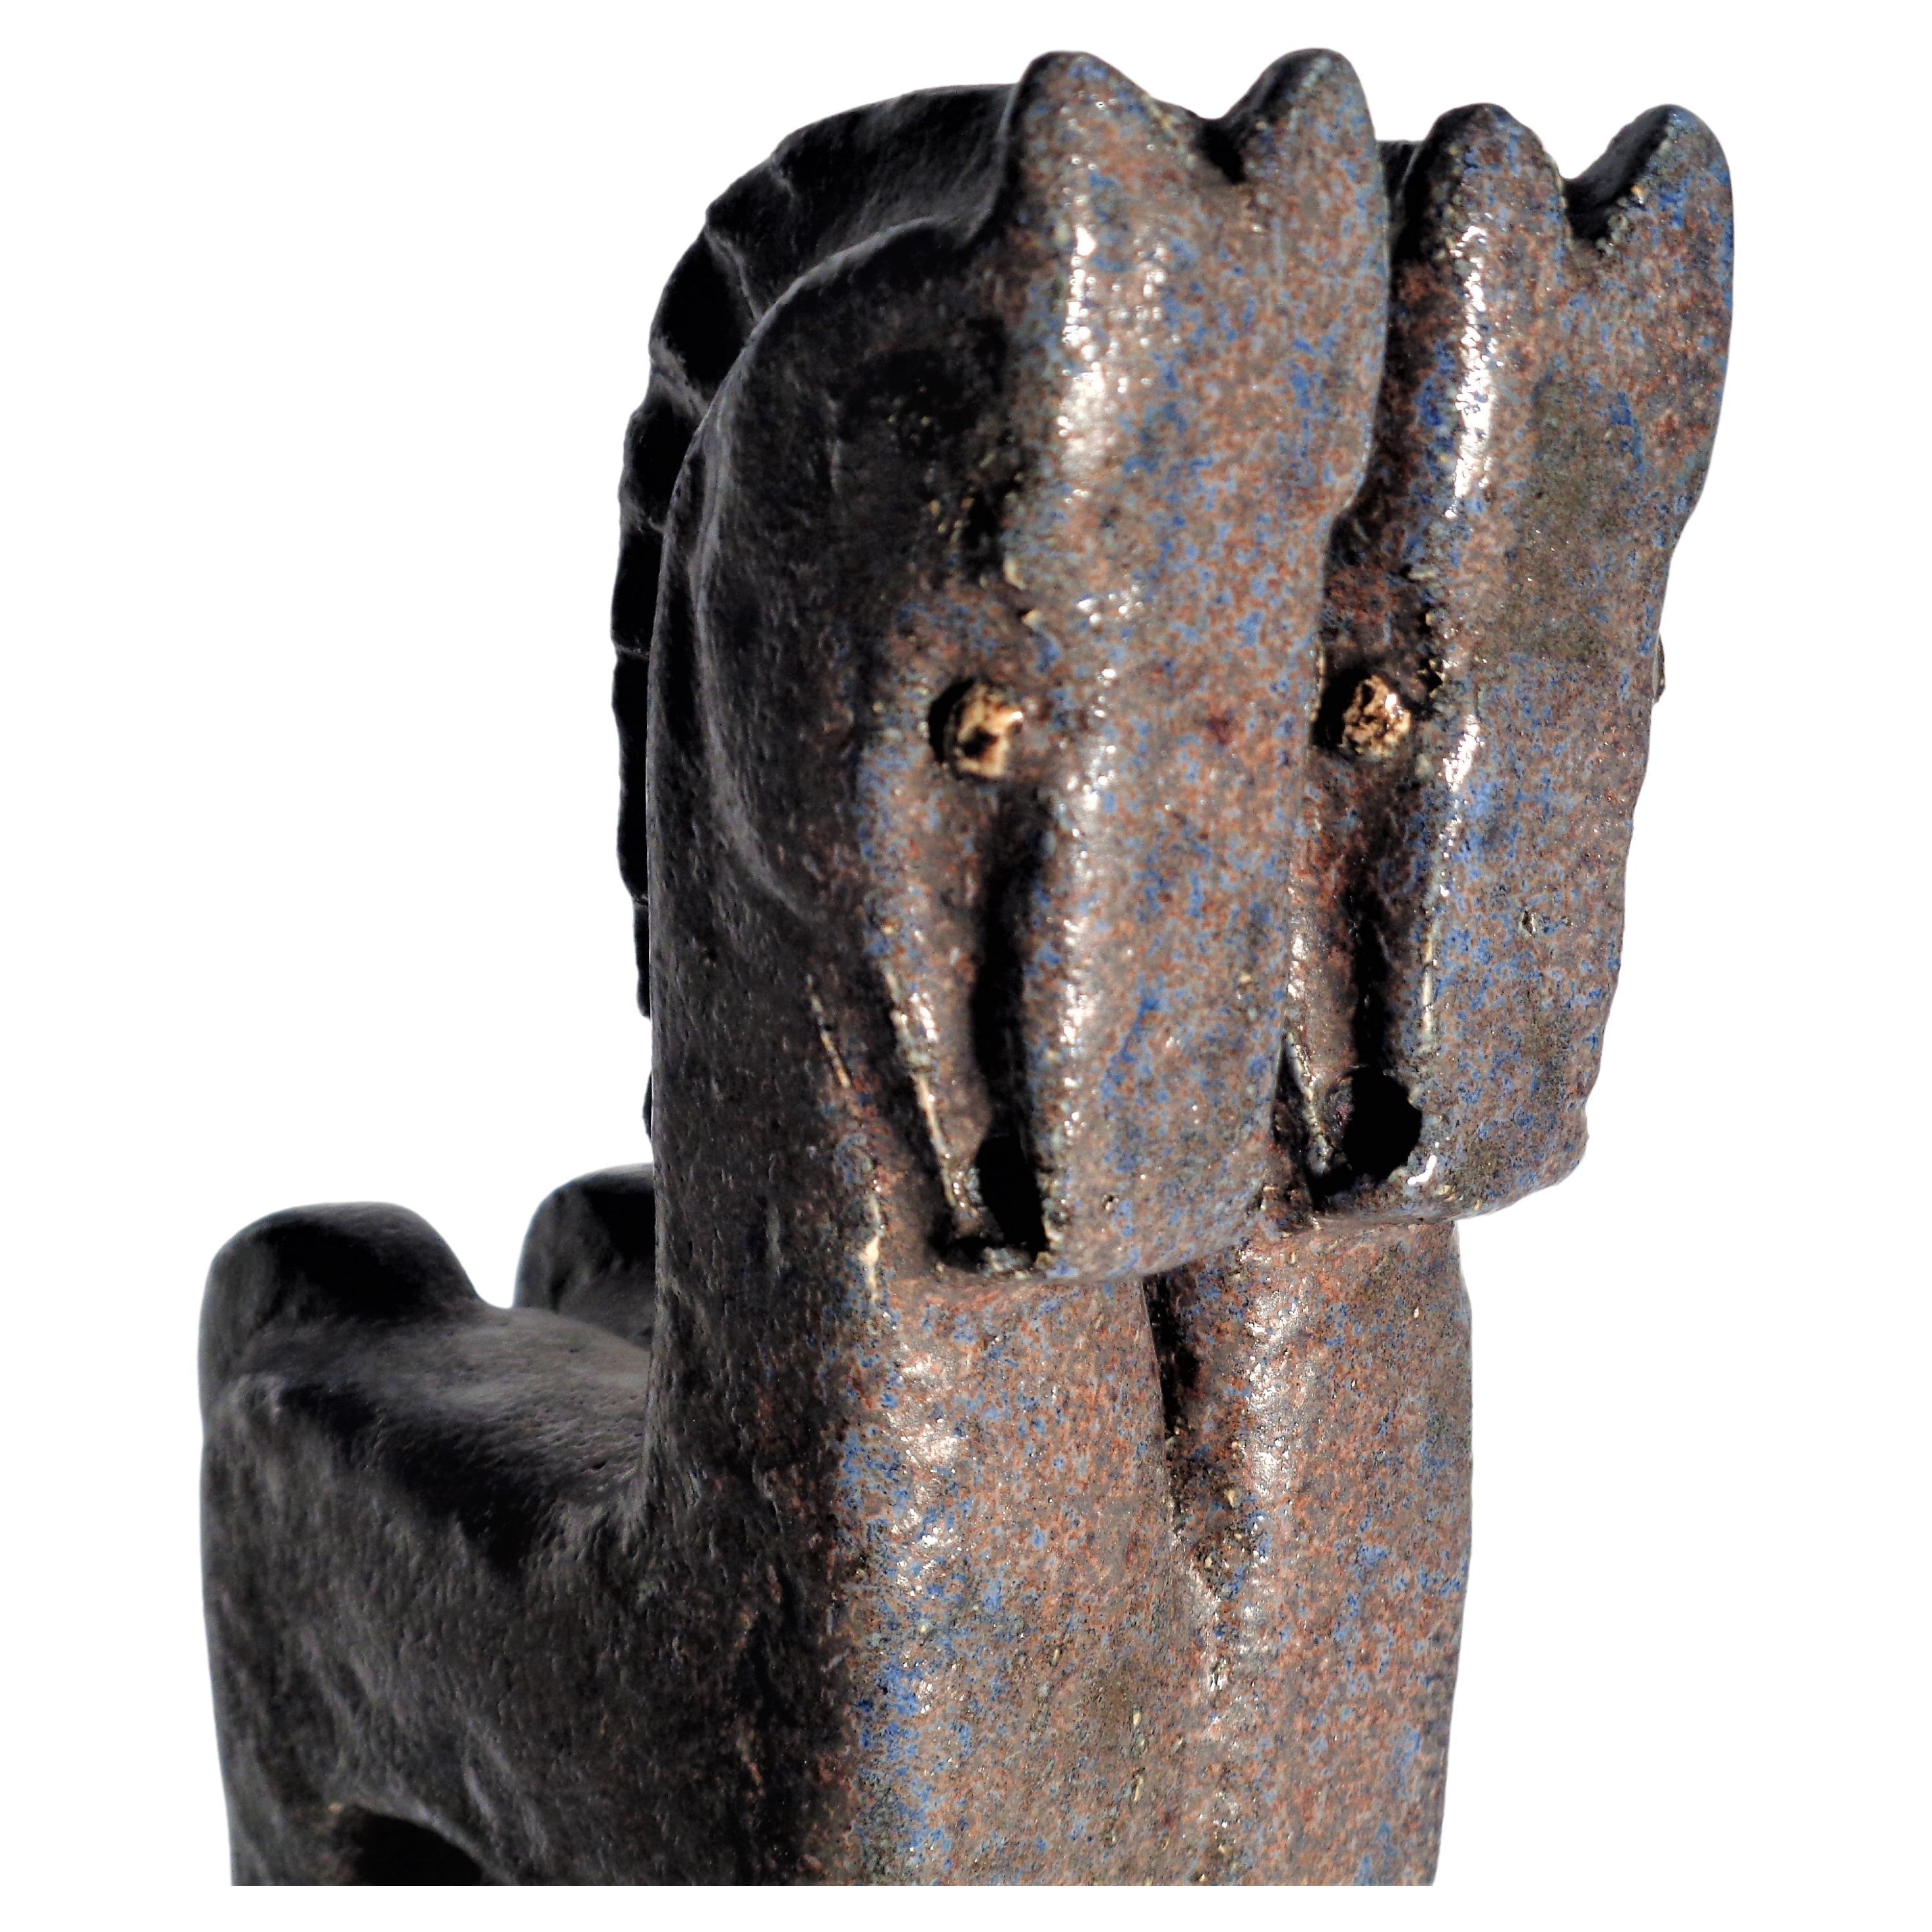 Helmut Freidrich Schaffenacker ( 1921-2010 ) sculpture de style cubiste en céramique émaillée à la main, chevaux debout avec jambes allongées. Signature dans la base. Allemagne, vers 1950 - 1960. Directement d'une collection privée de céramiques